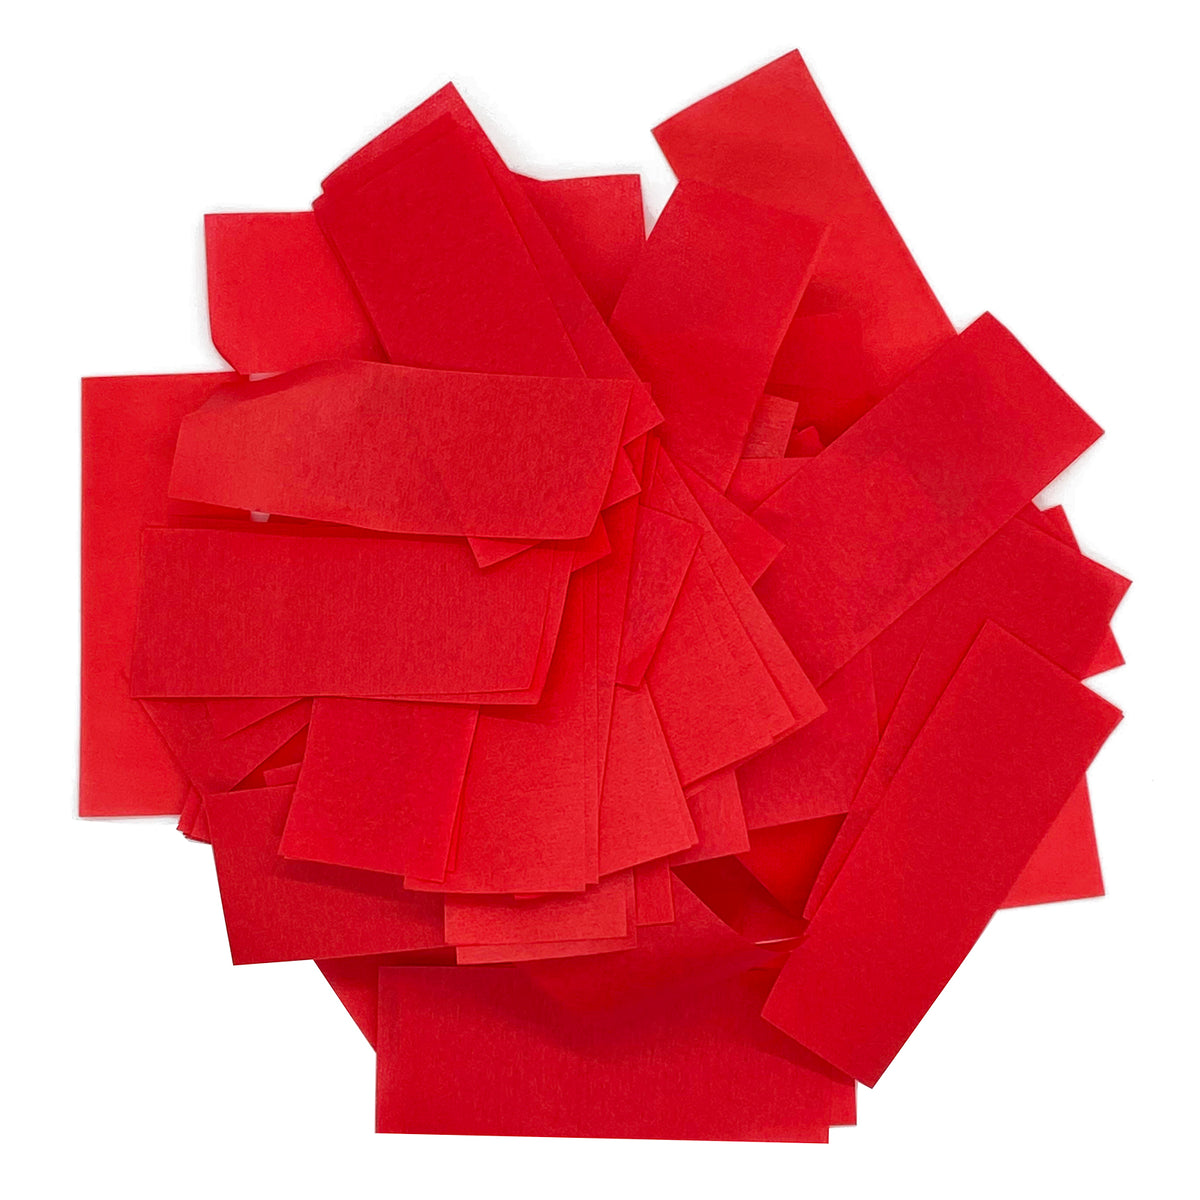 1 Round Tissue Paper Confetti (Mix Colors) – allydrew